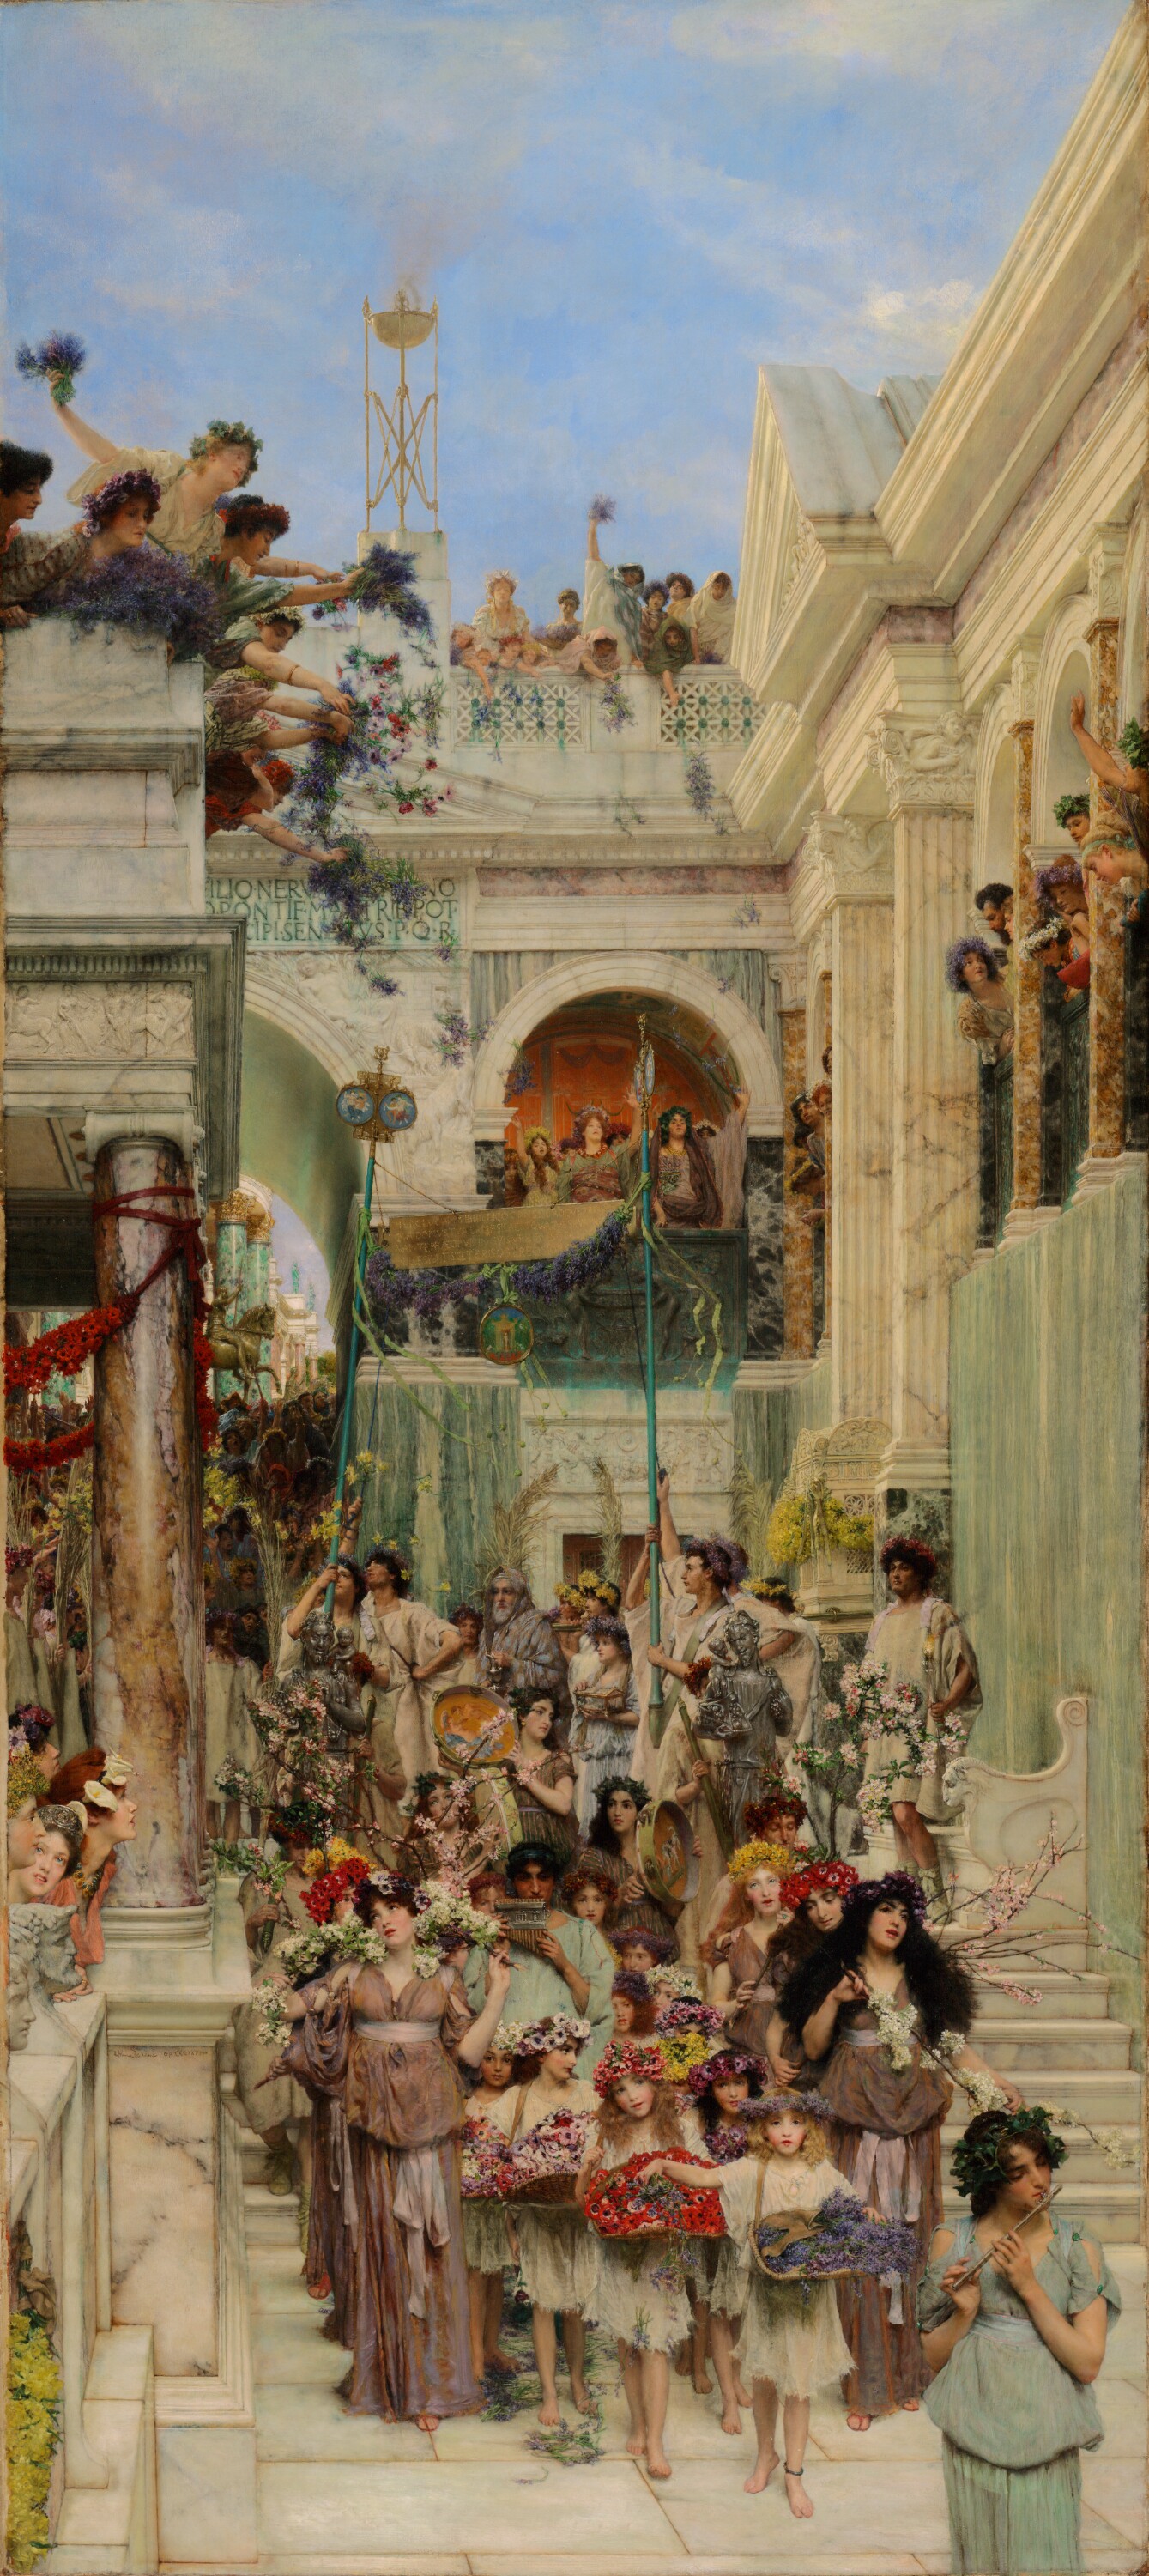 peinture sur huile : procession en l'honneur du printemps en rome antique, peint par Lawrence Alma-Tadema, 1894